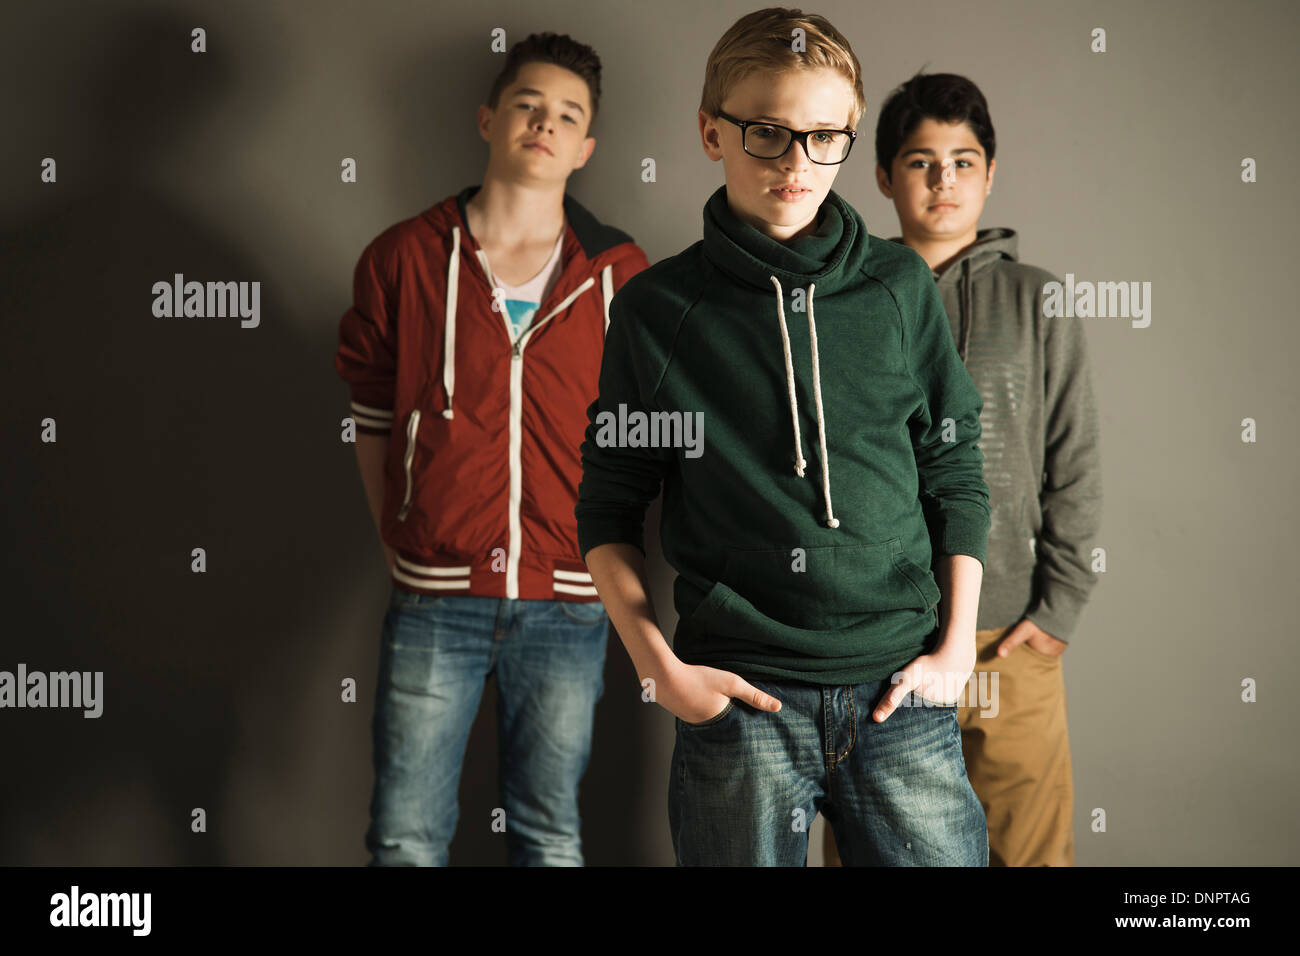 Ritratto di ragazzi adolescenti, Studio Shot Foto Stock